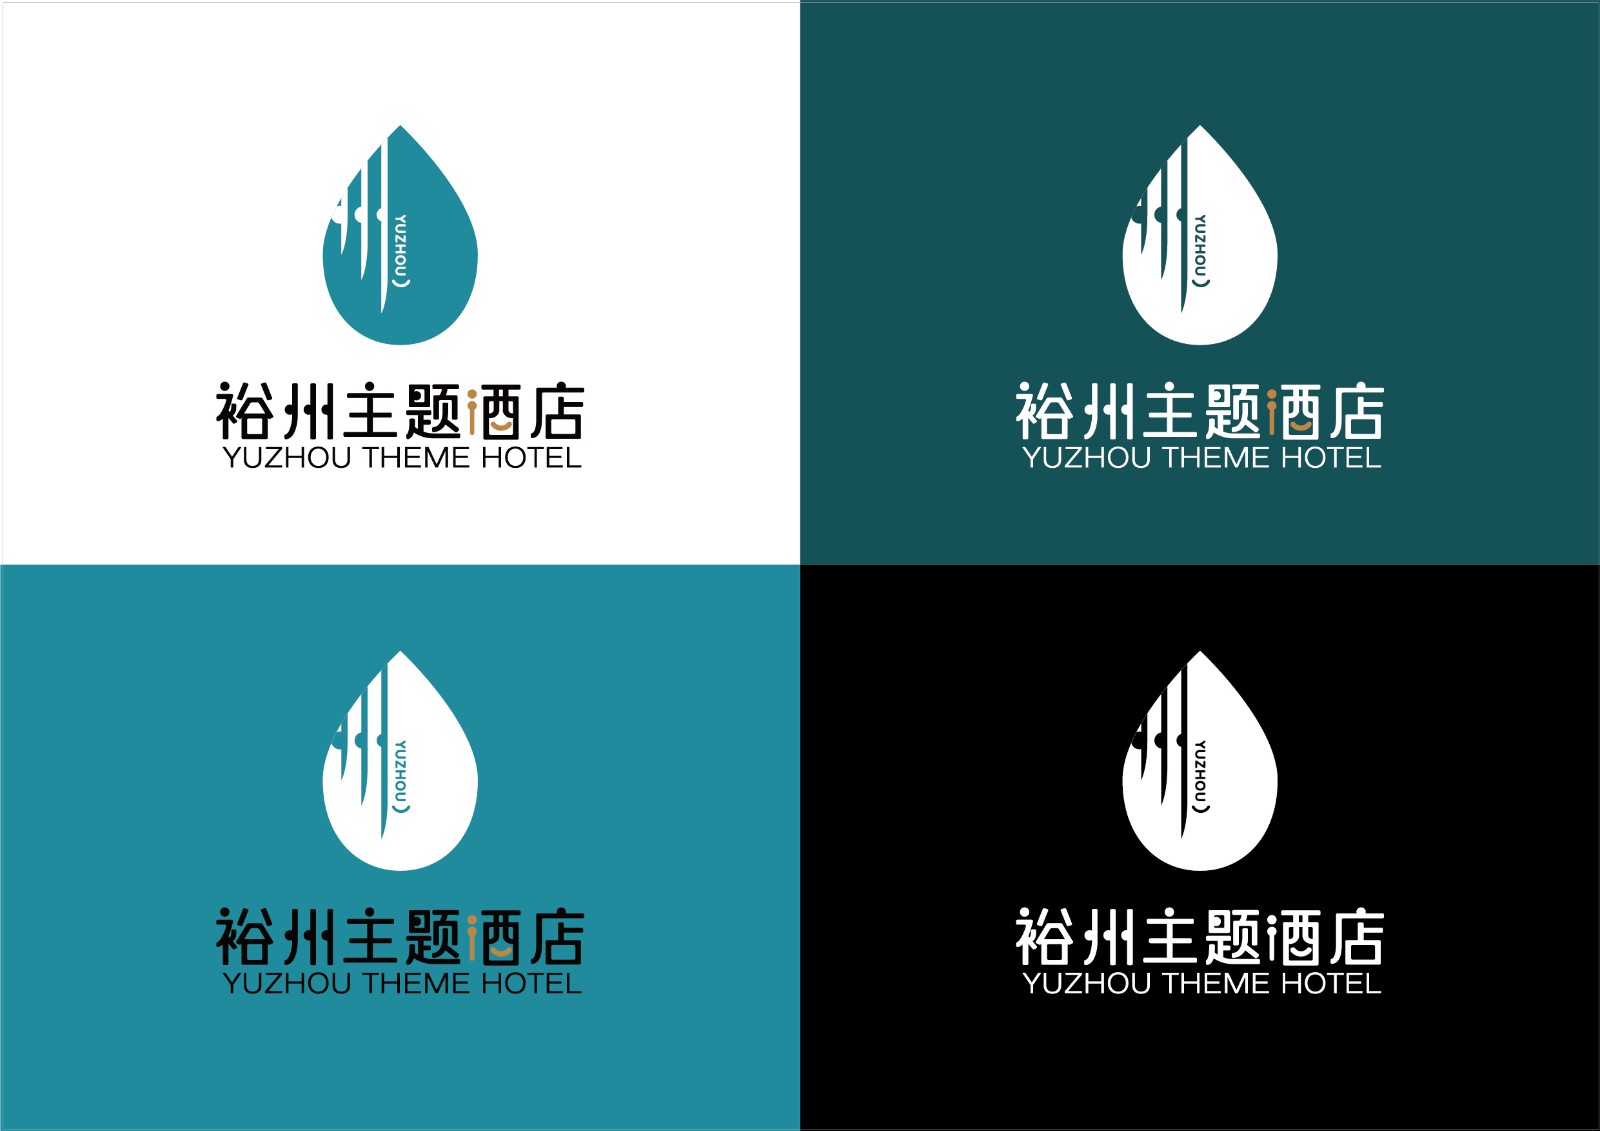 裕州-主题酒店及足浴养生馆logo方案1 20201113-05.jpg